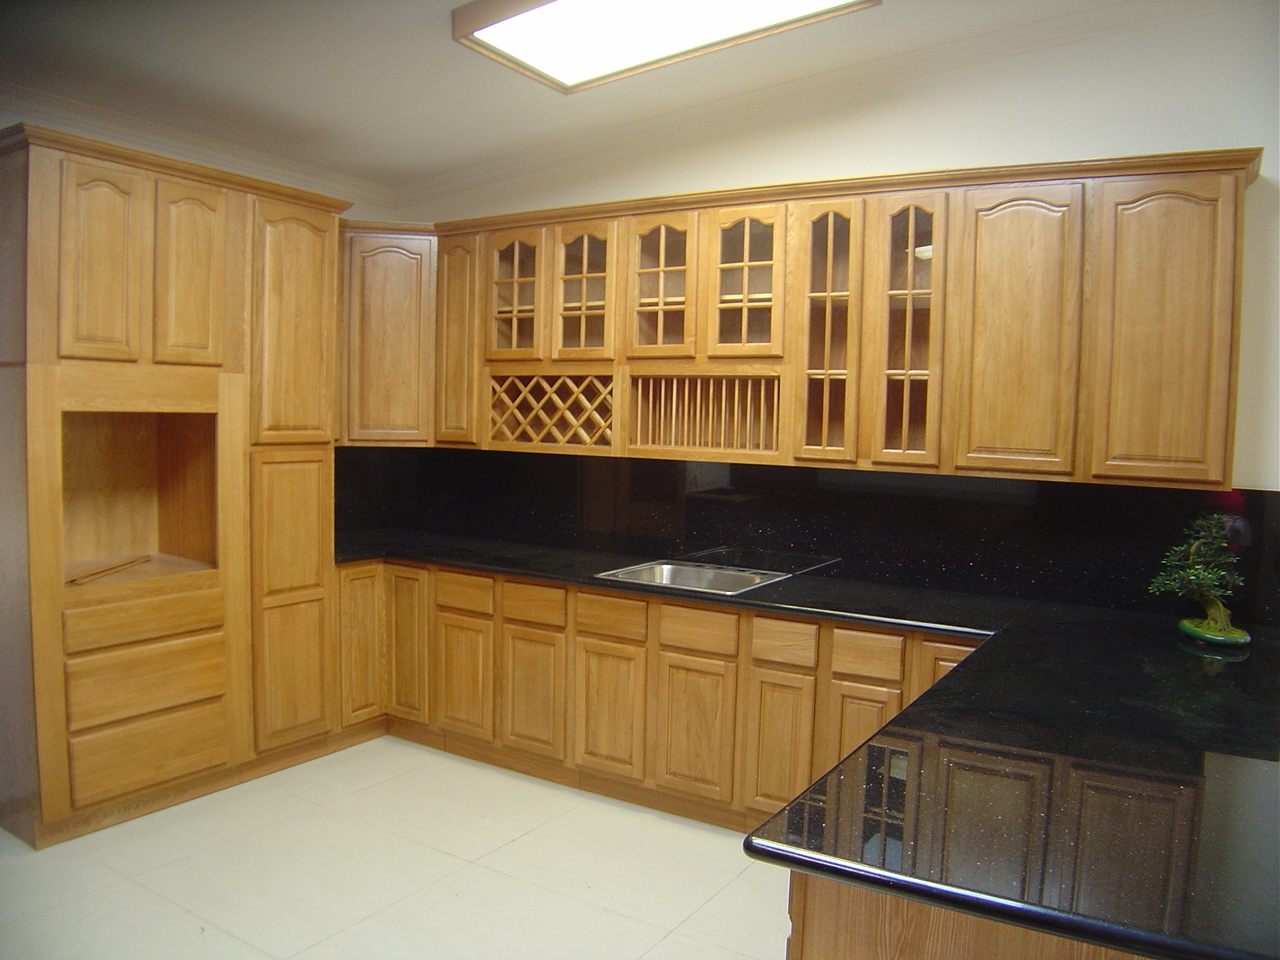 Tủ bếp gỗ sồi (Oak) hình chữ L được bao trùm bởi tone màu vàng nhạt đem đến vẻ đẹp mộc mạc và tiện nghi cho không gian phòng bếp